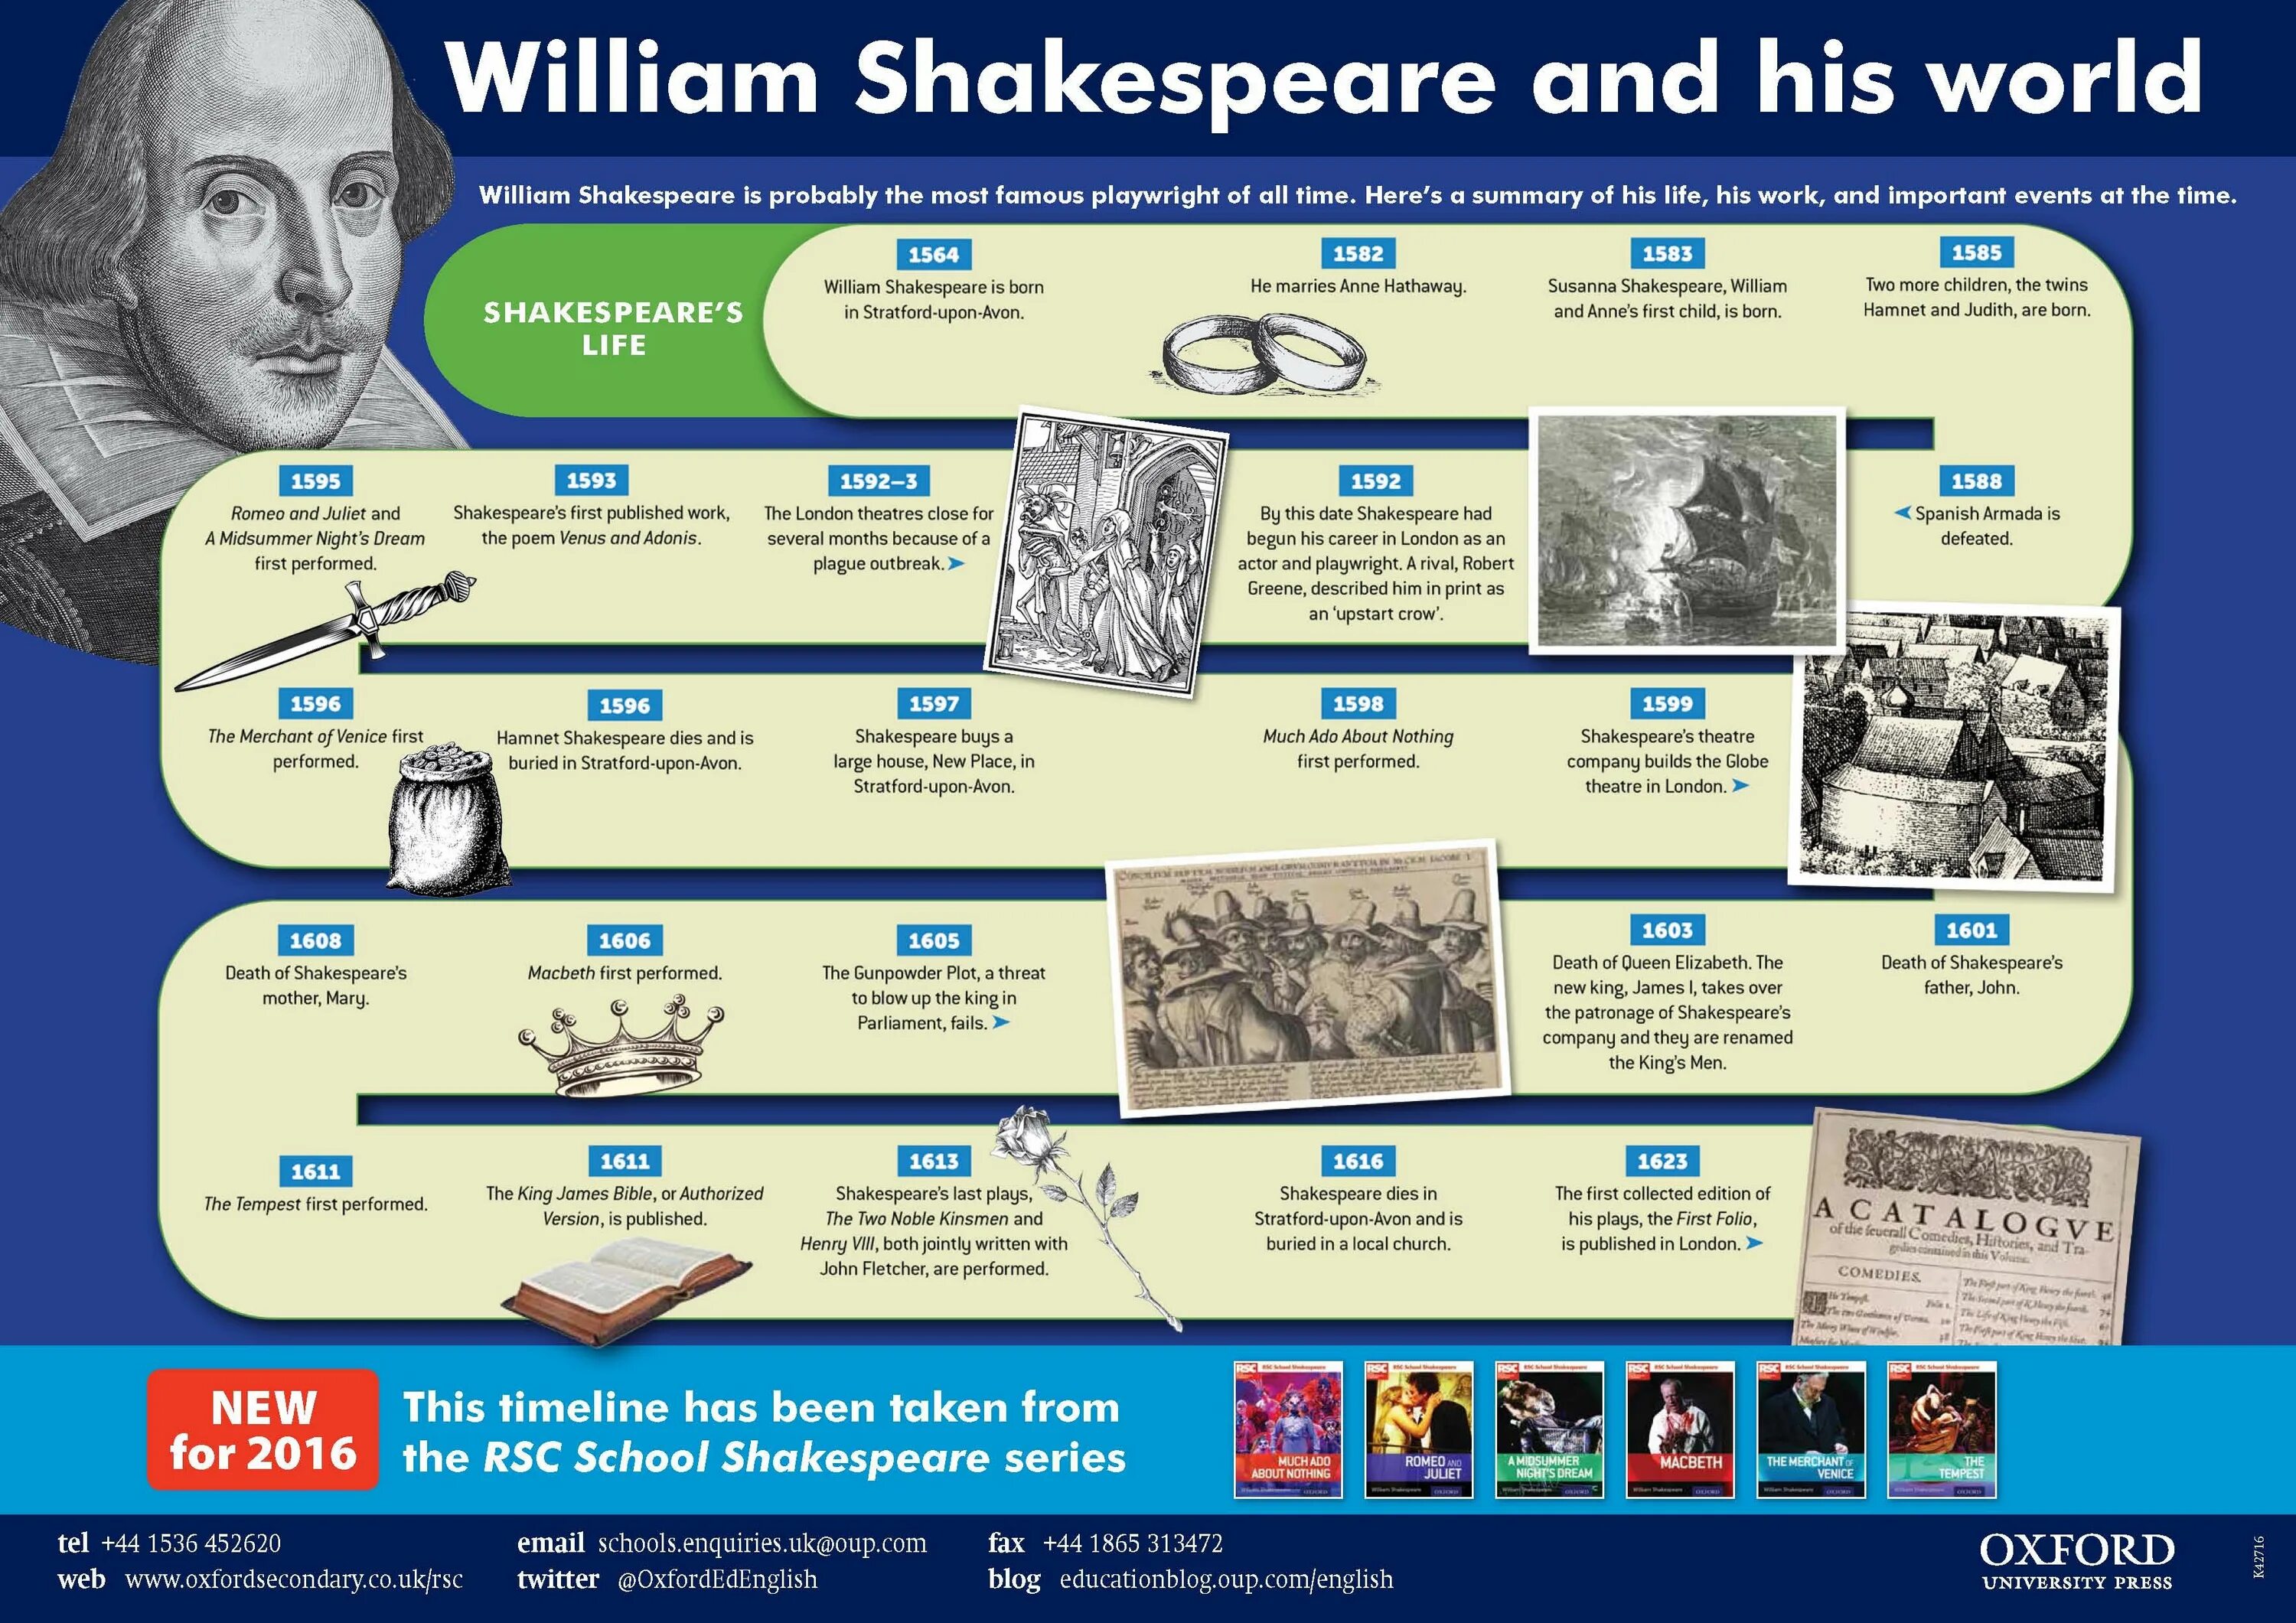 His world com. Шекспир инфографика. William Shakespeare timeline. Уильям Шекспир инфографика. William Shakespeare плакат.